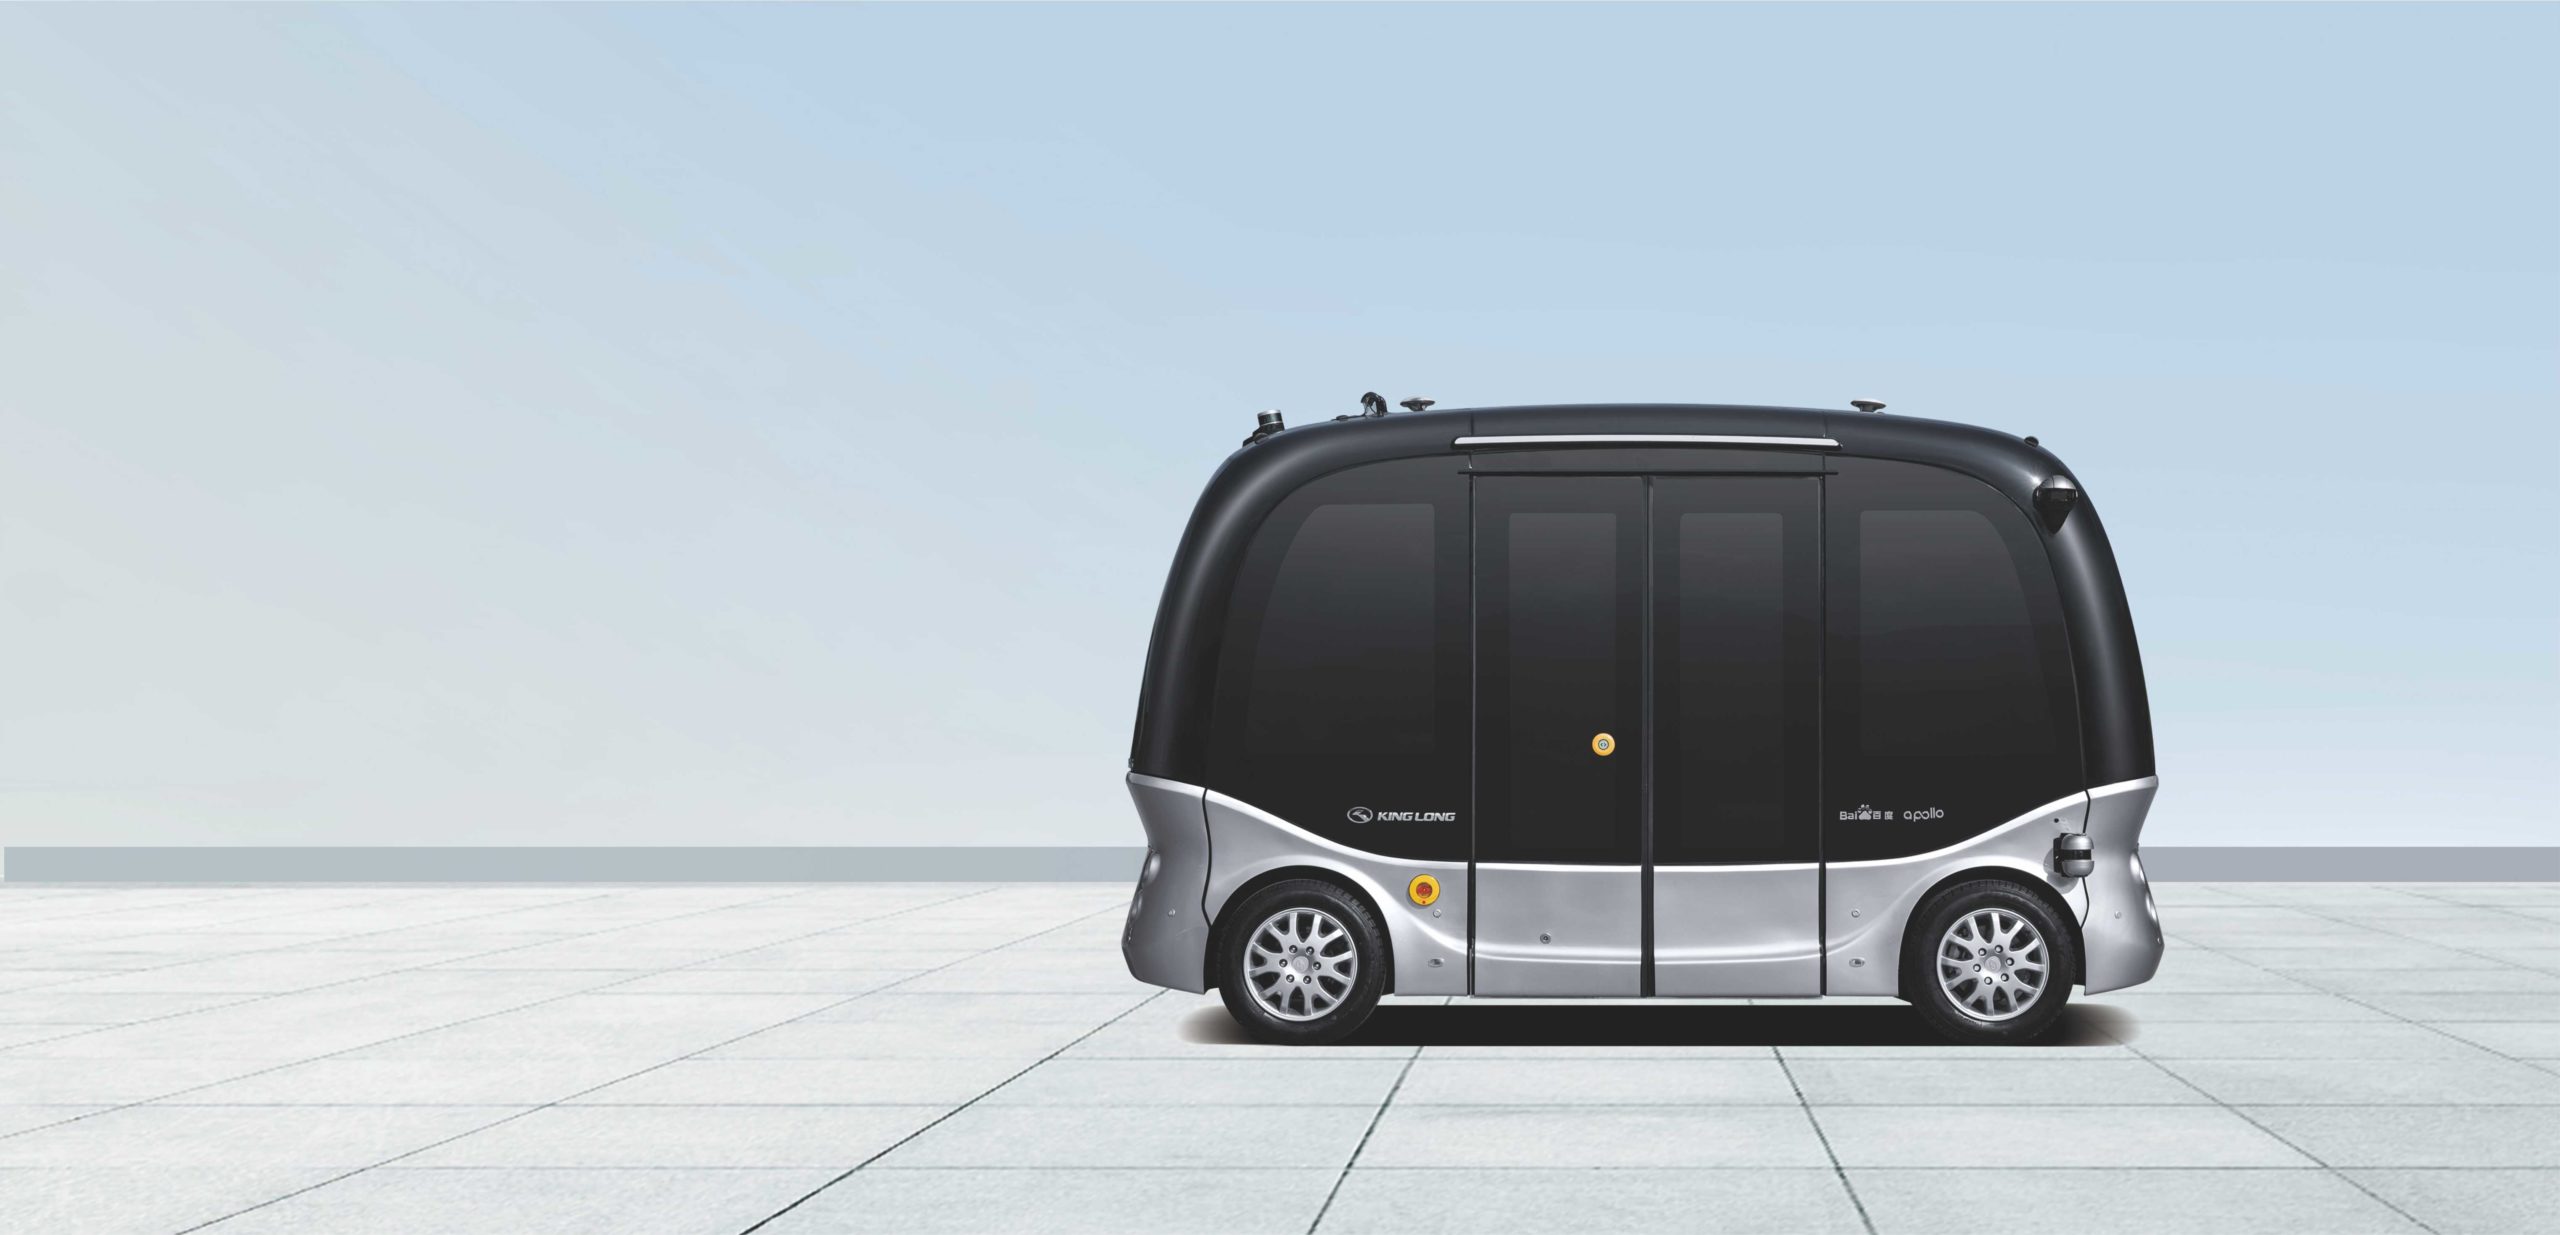 autobuses de conducción autónoma king long pequeños